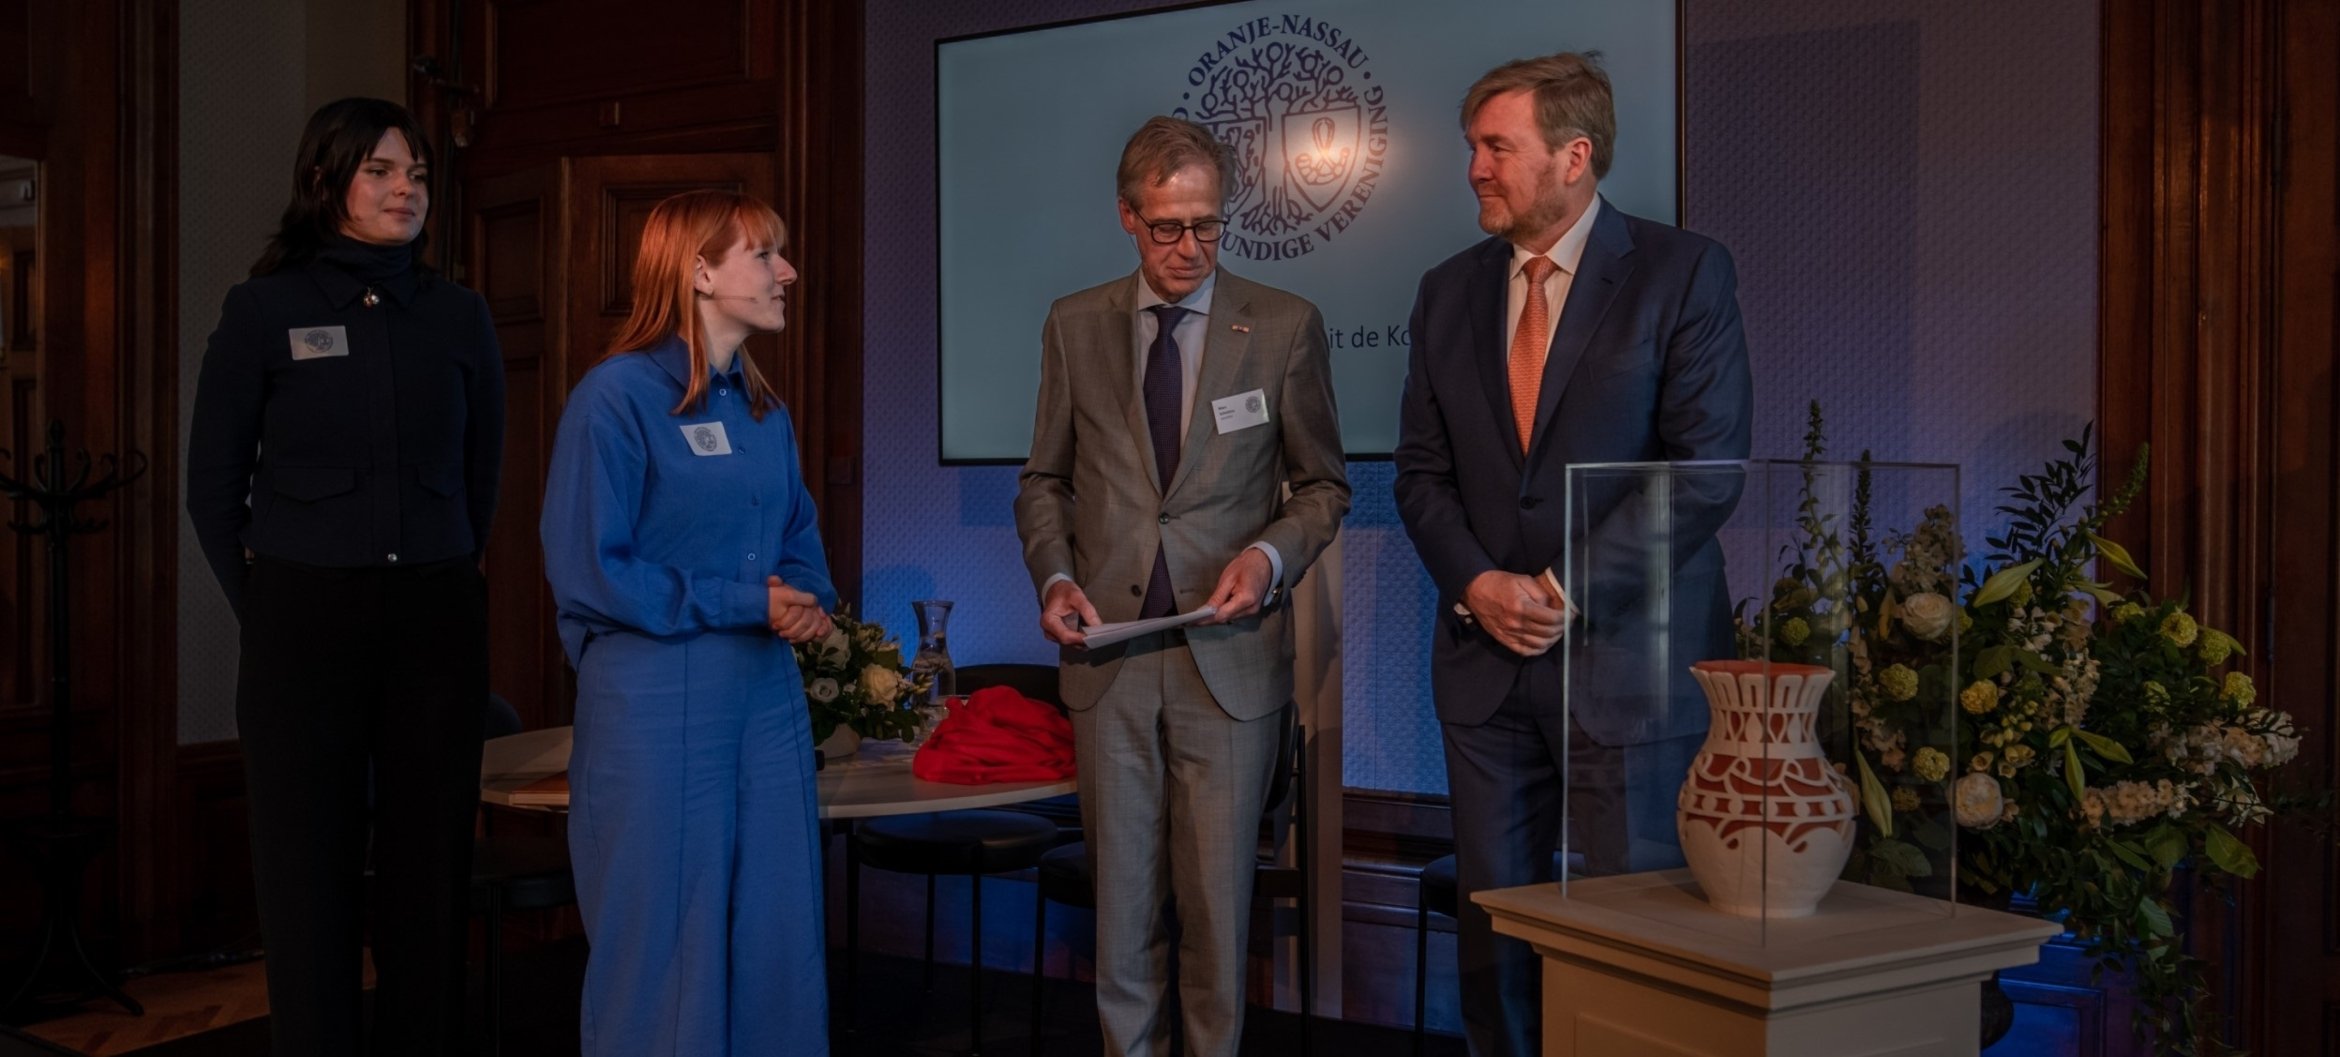 Eline de Boer and Irene van Dijke hand over the gift to King Willem-Alexander, photo by Theo van Woerden